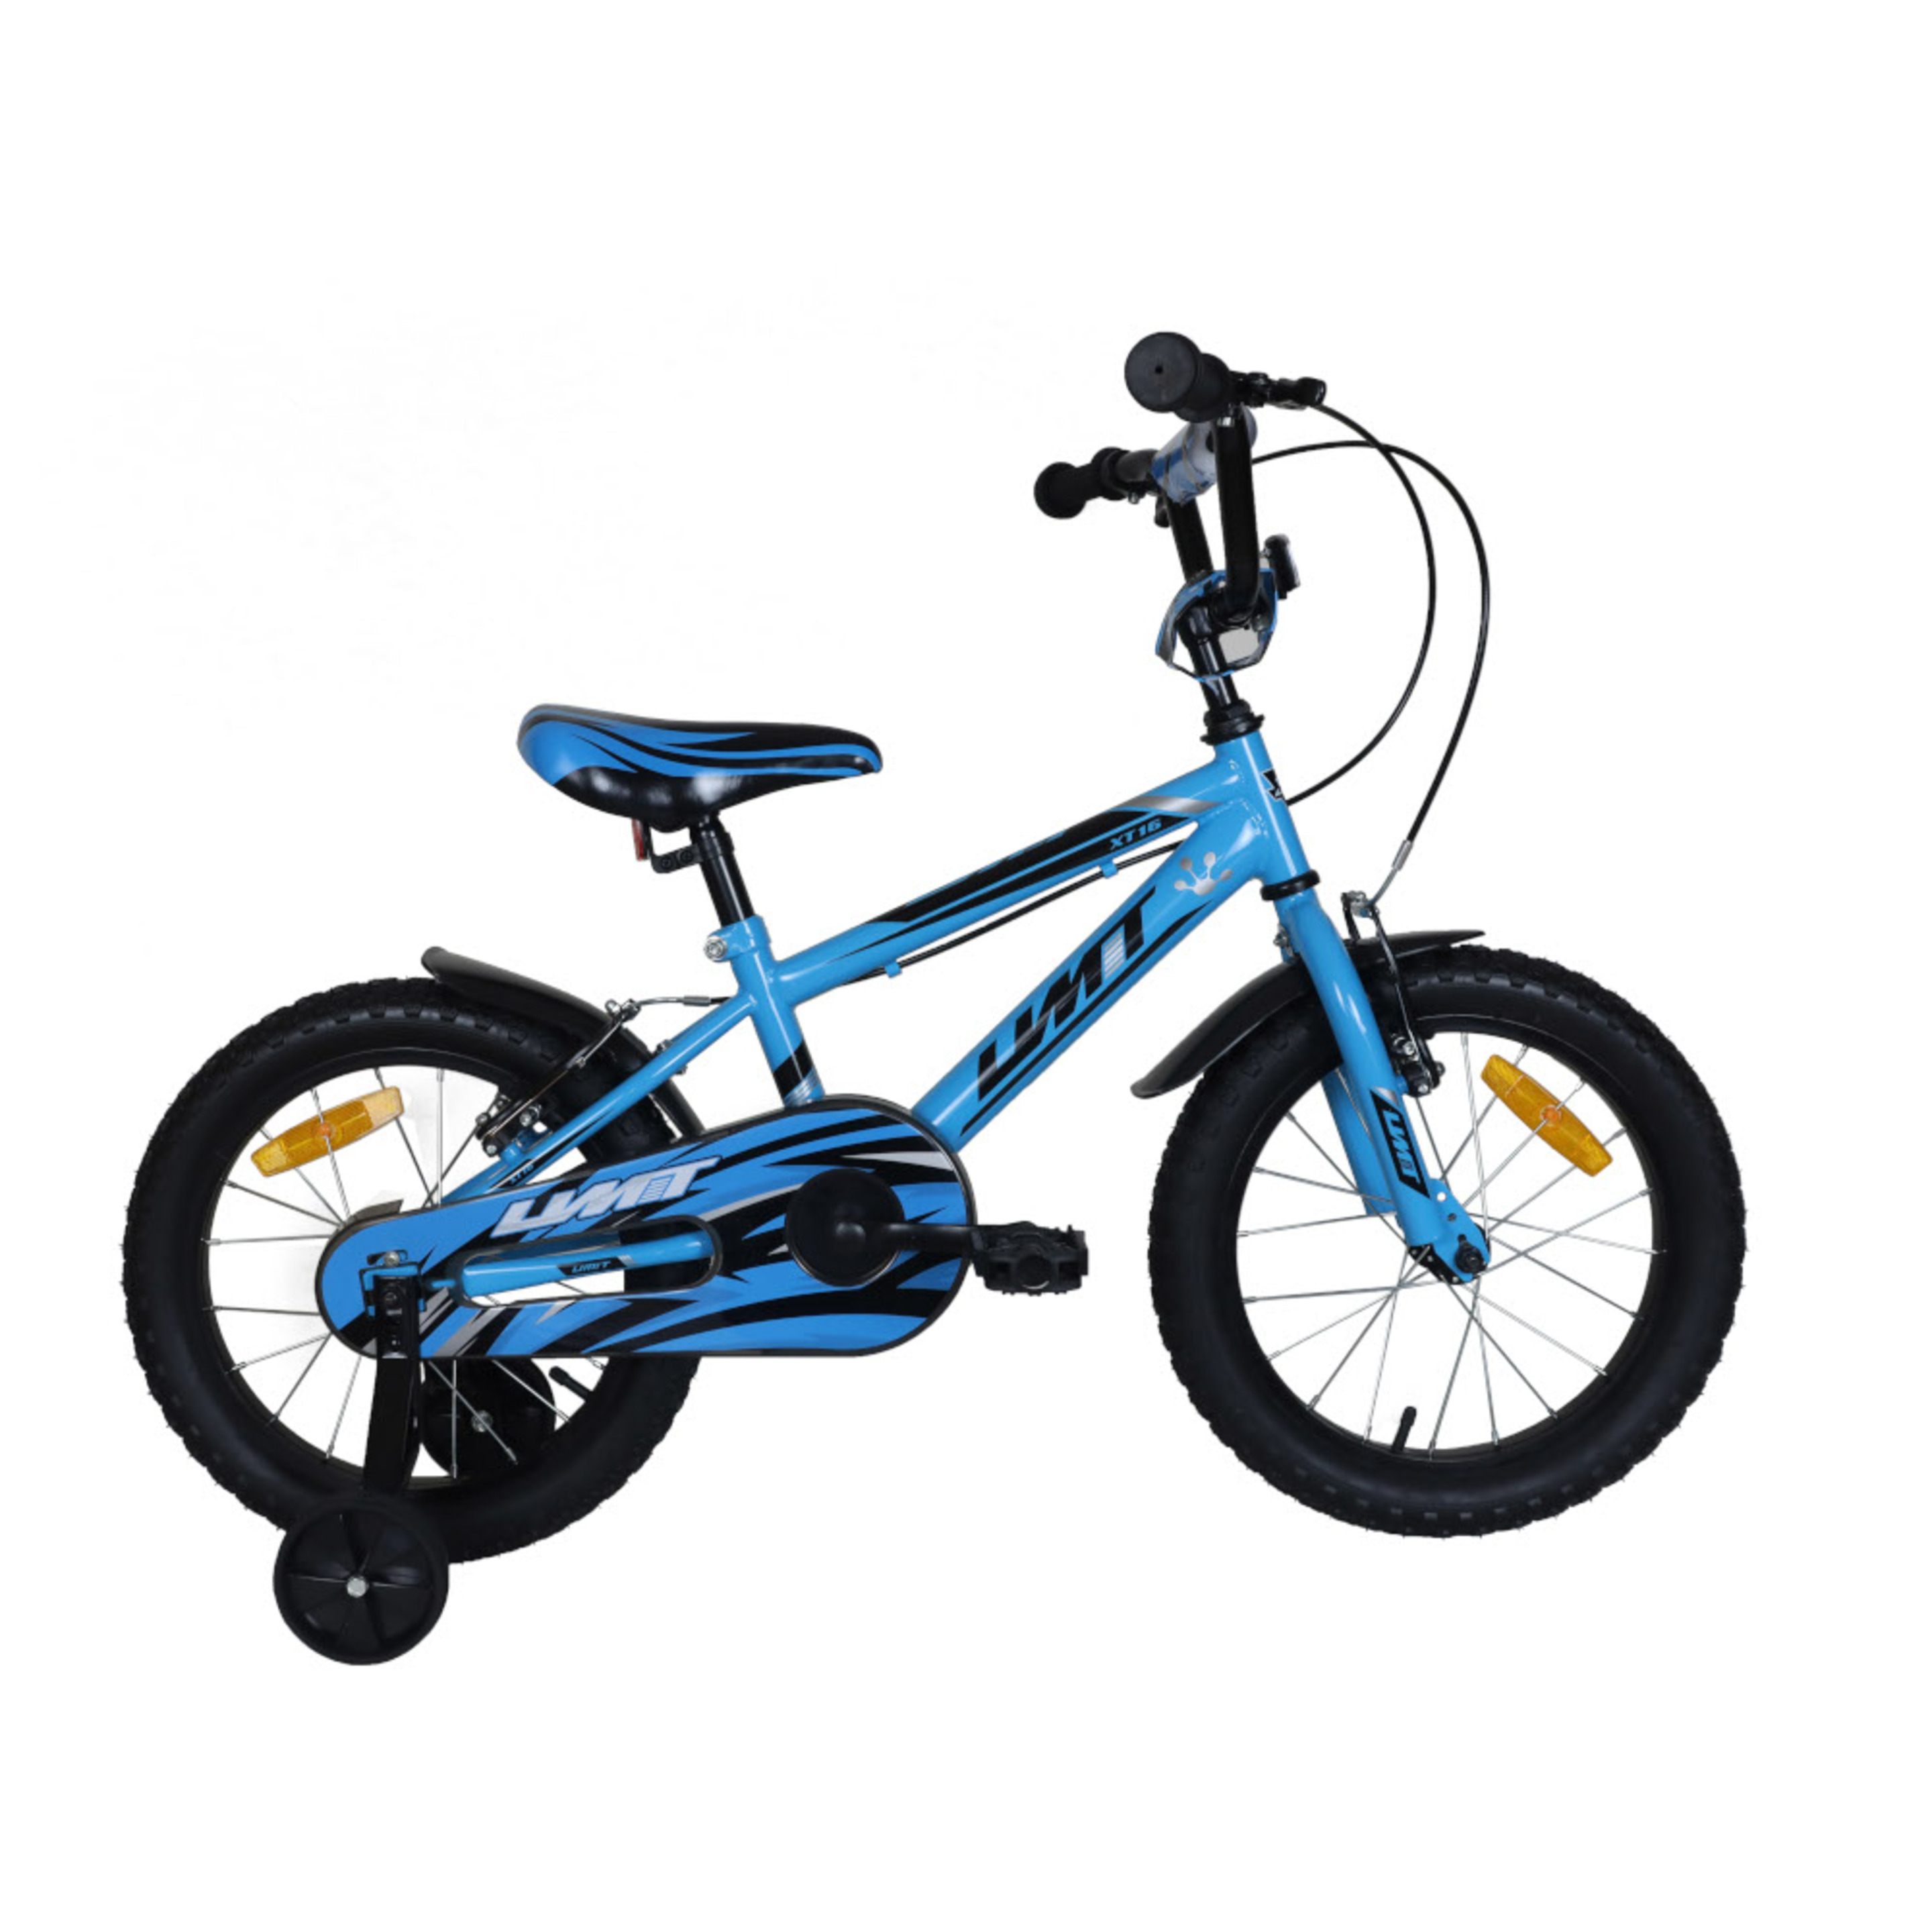 Xt16 Mountain Bike Infantil Azul - azul - 